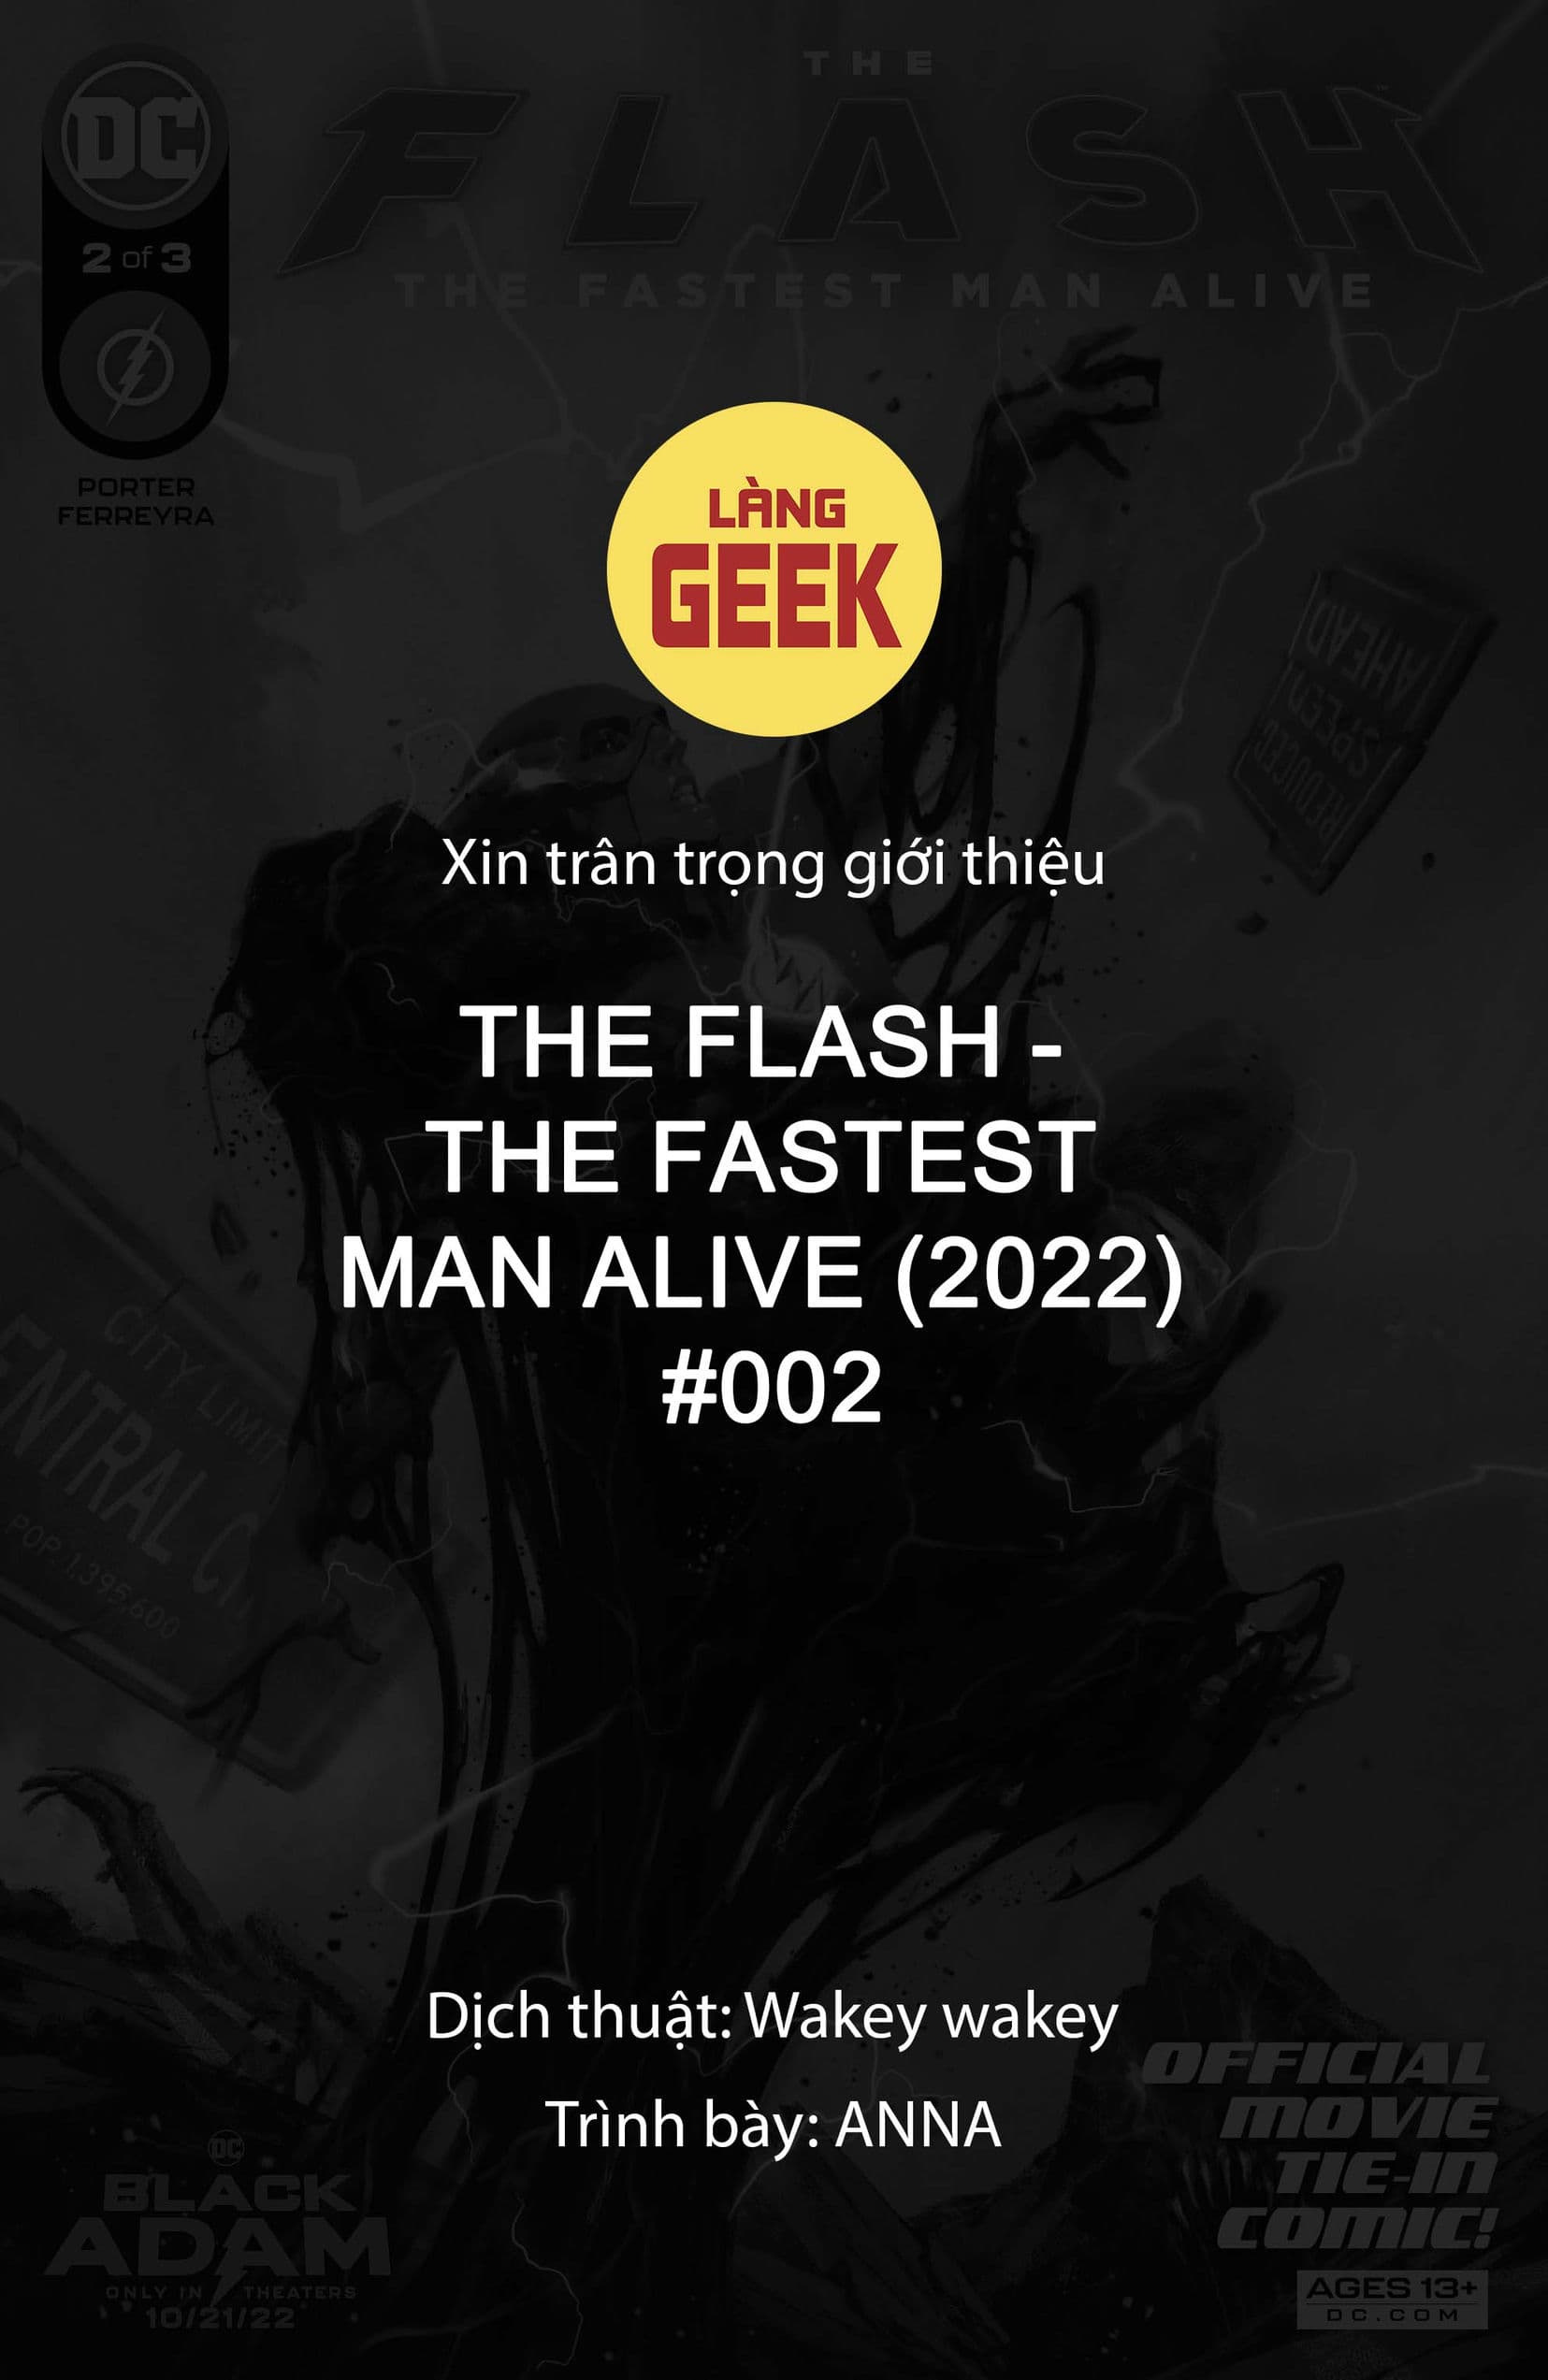 https://langgeek.net/wp-content/webpc-passthru.php?src=https://langgeek.net/wp-content/uploads/2023/06/The-Flash-The-Fastest-Man-Alive-2022-002-002.jpg&nocache=1